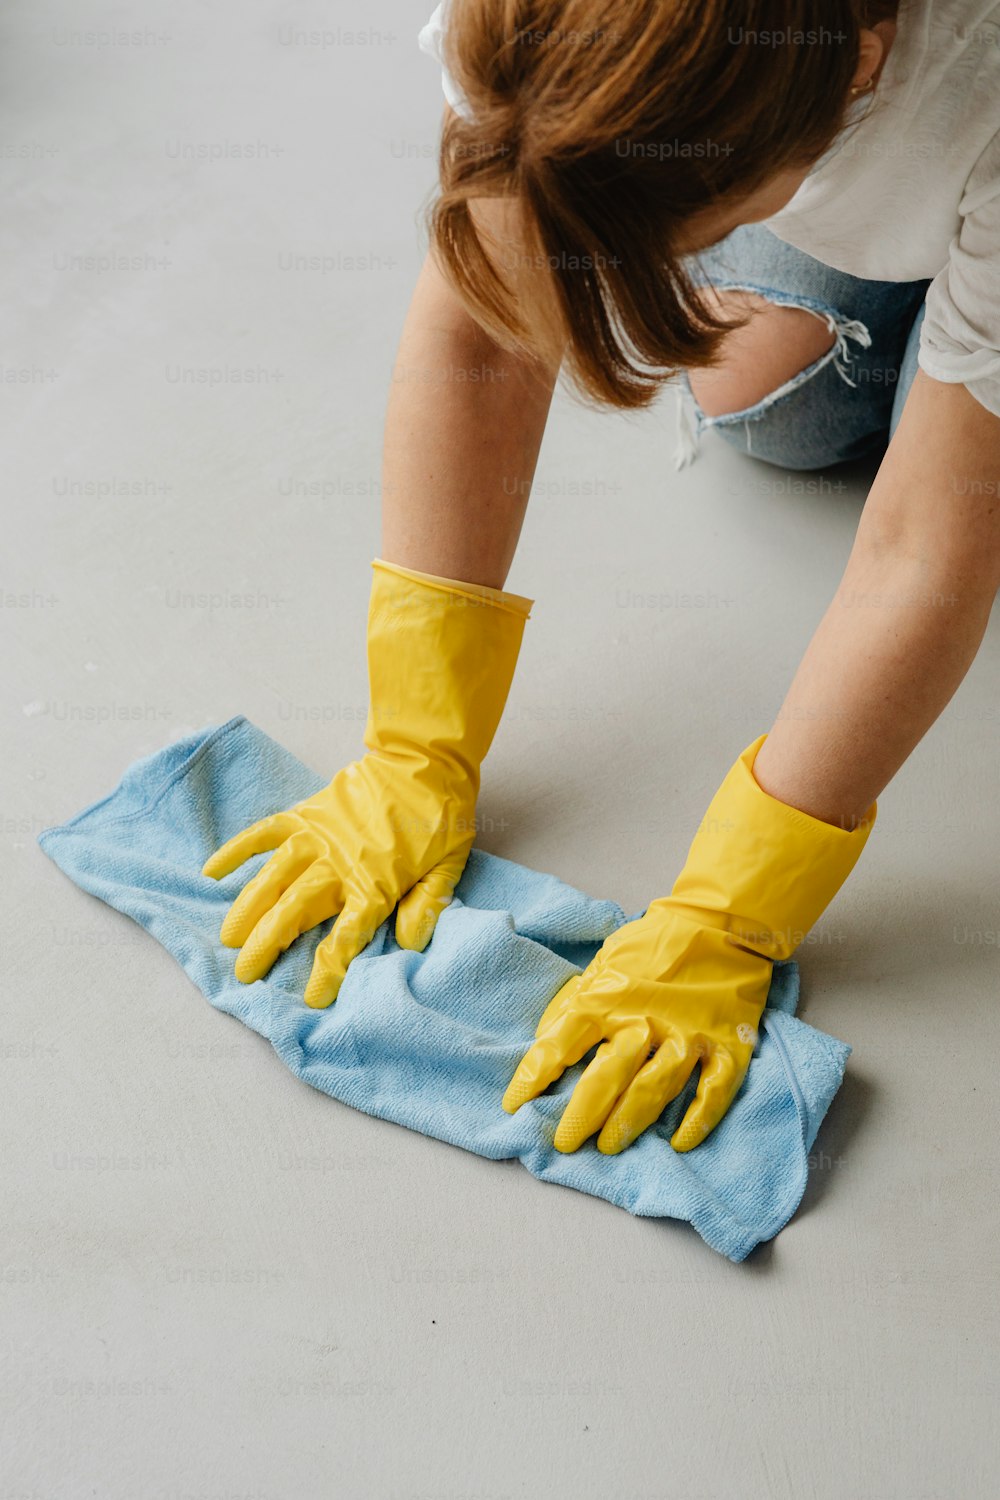 Una mujer con guantes amarillos limpiando una toalla azul